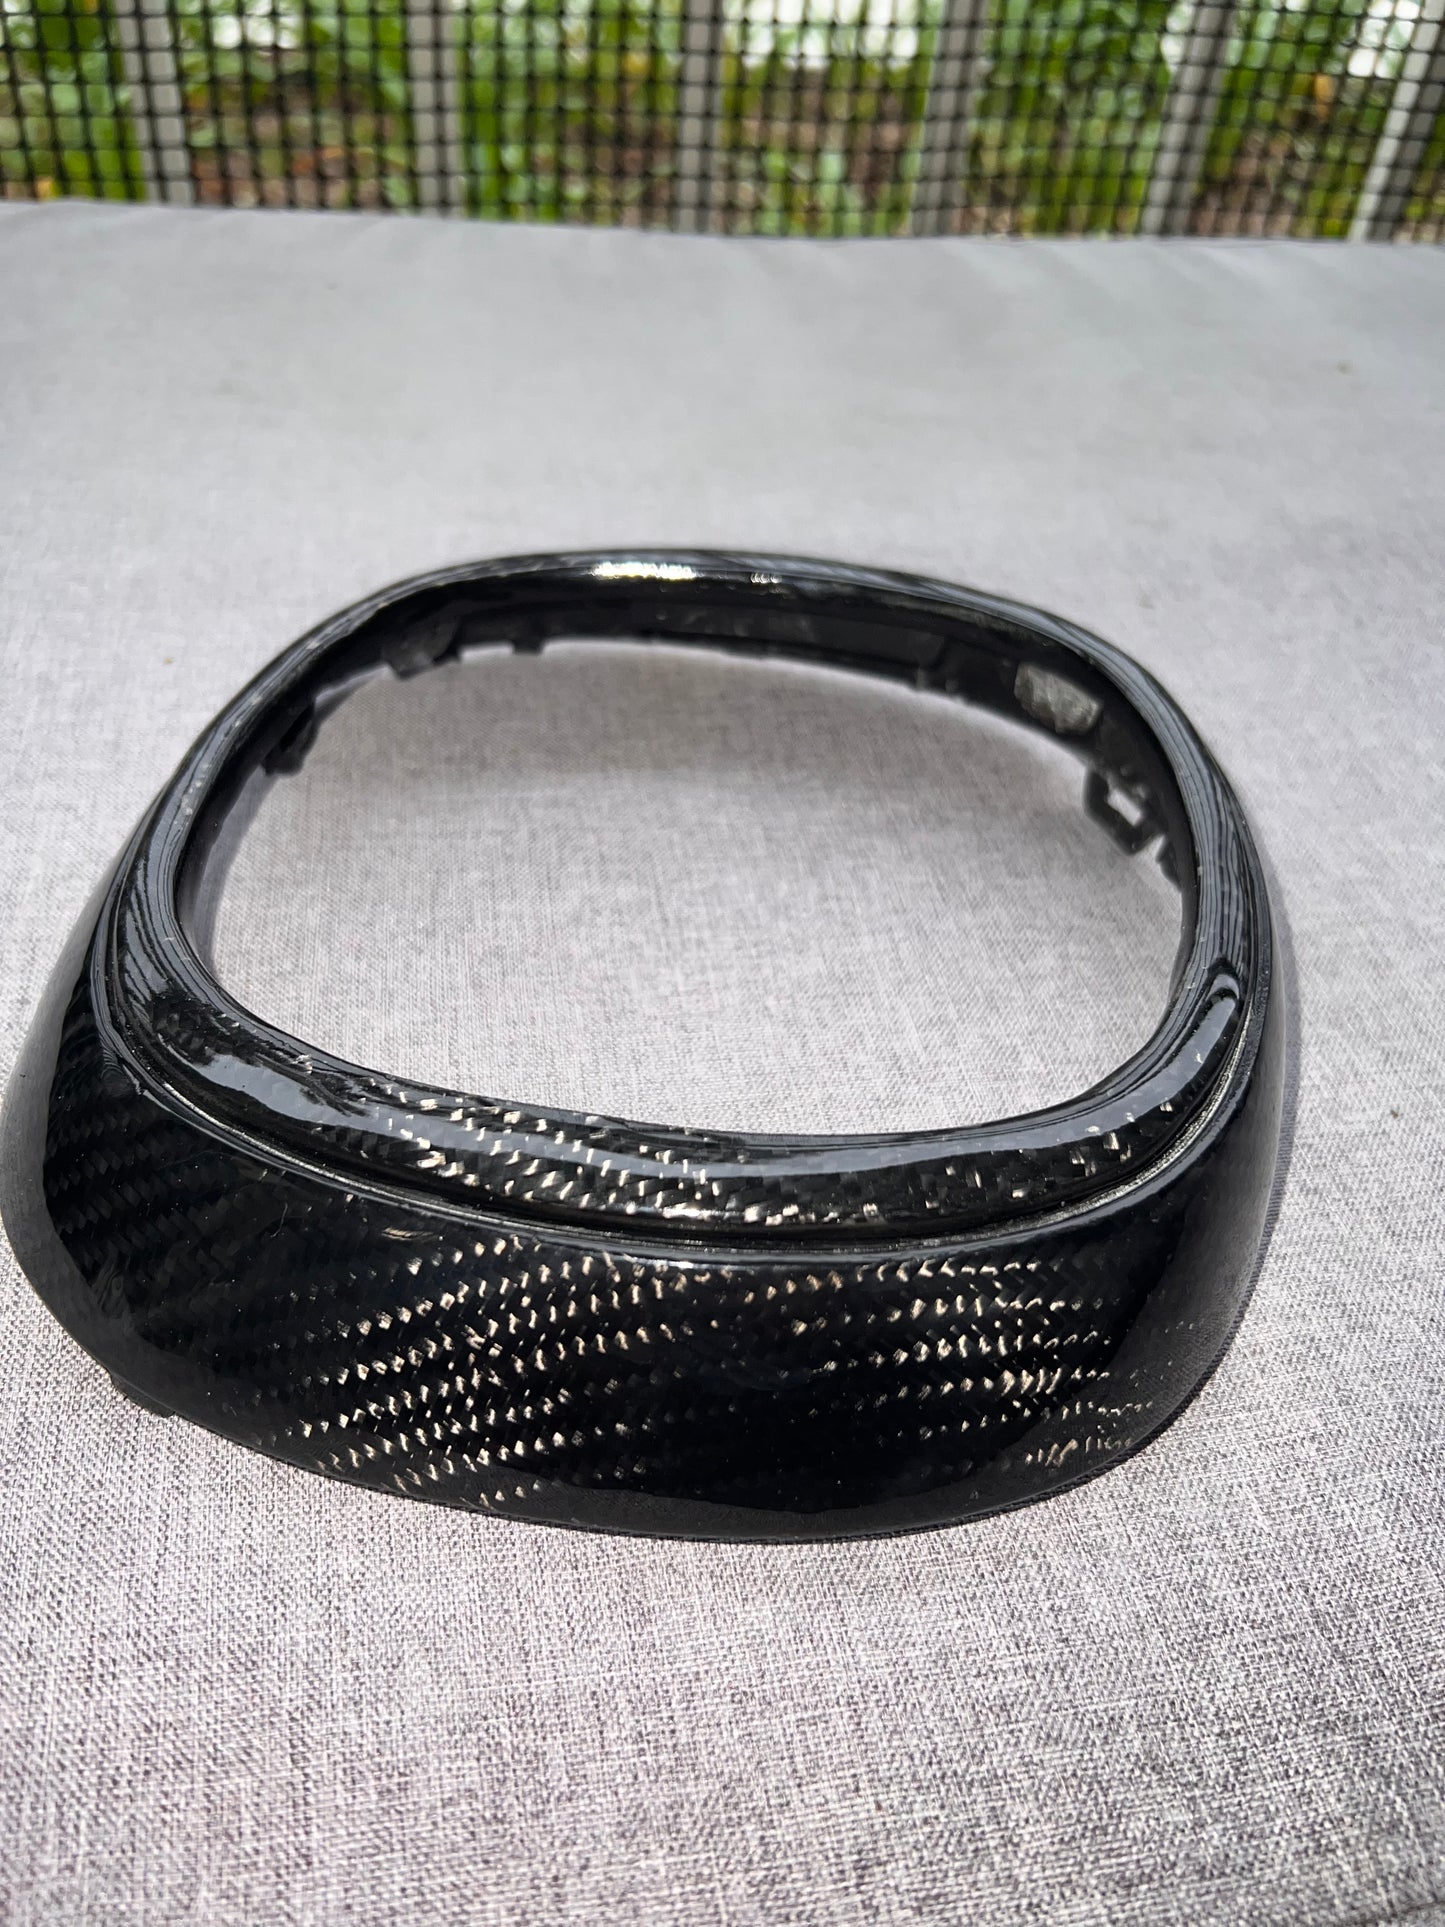 2019-2021 RDX Carbon Fiber Emblem Sensor Cover + Ring